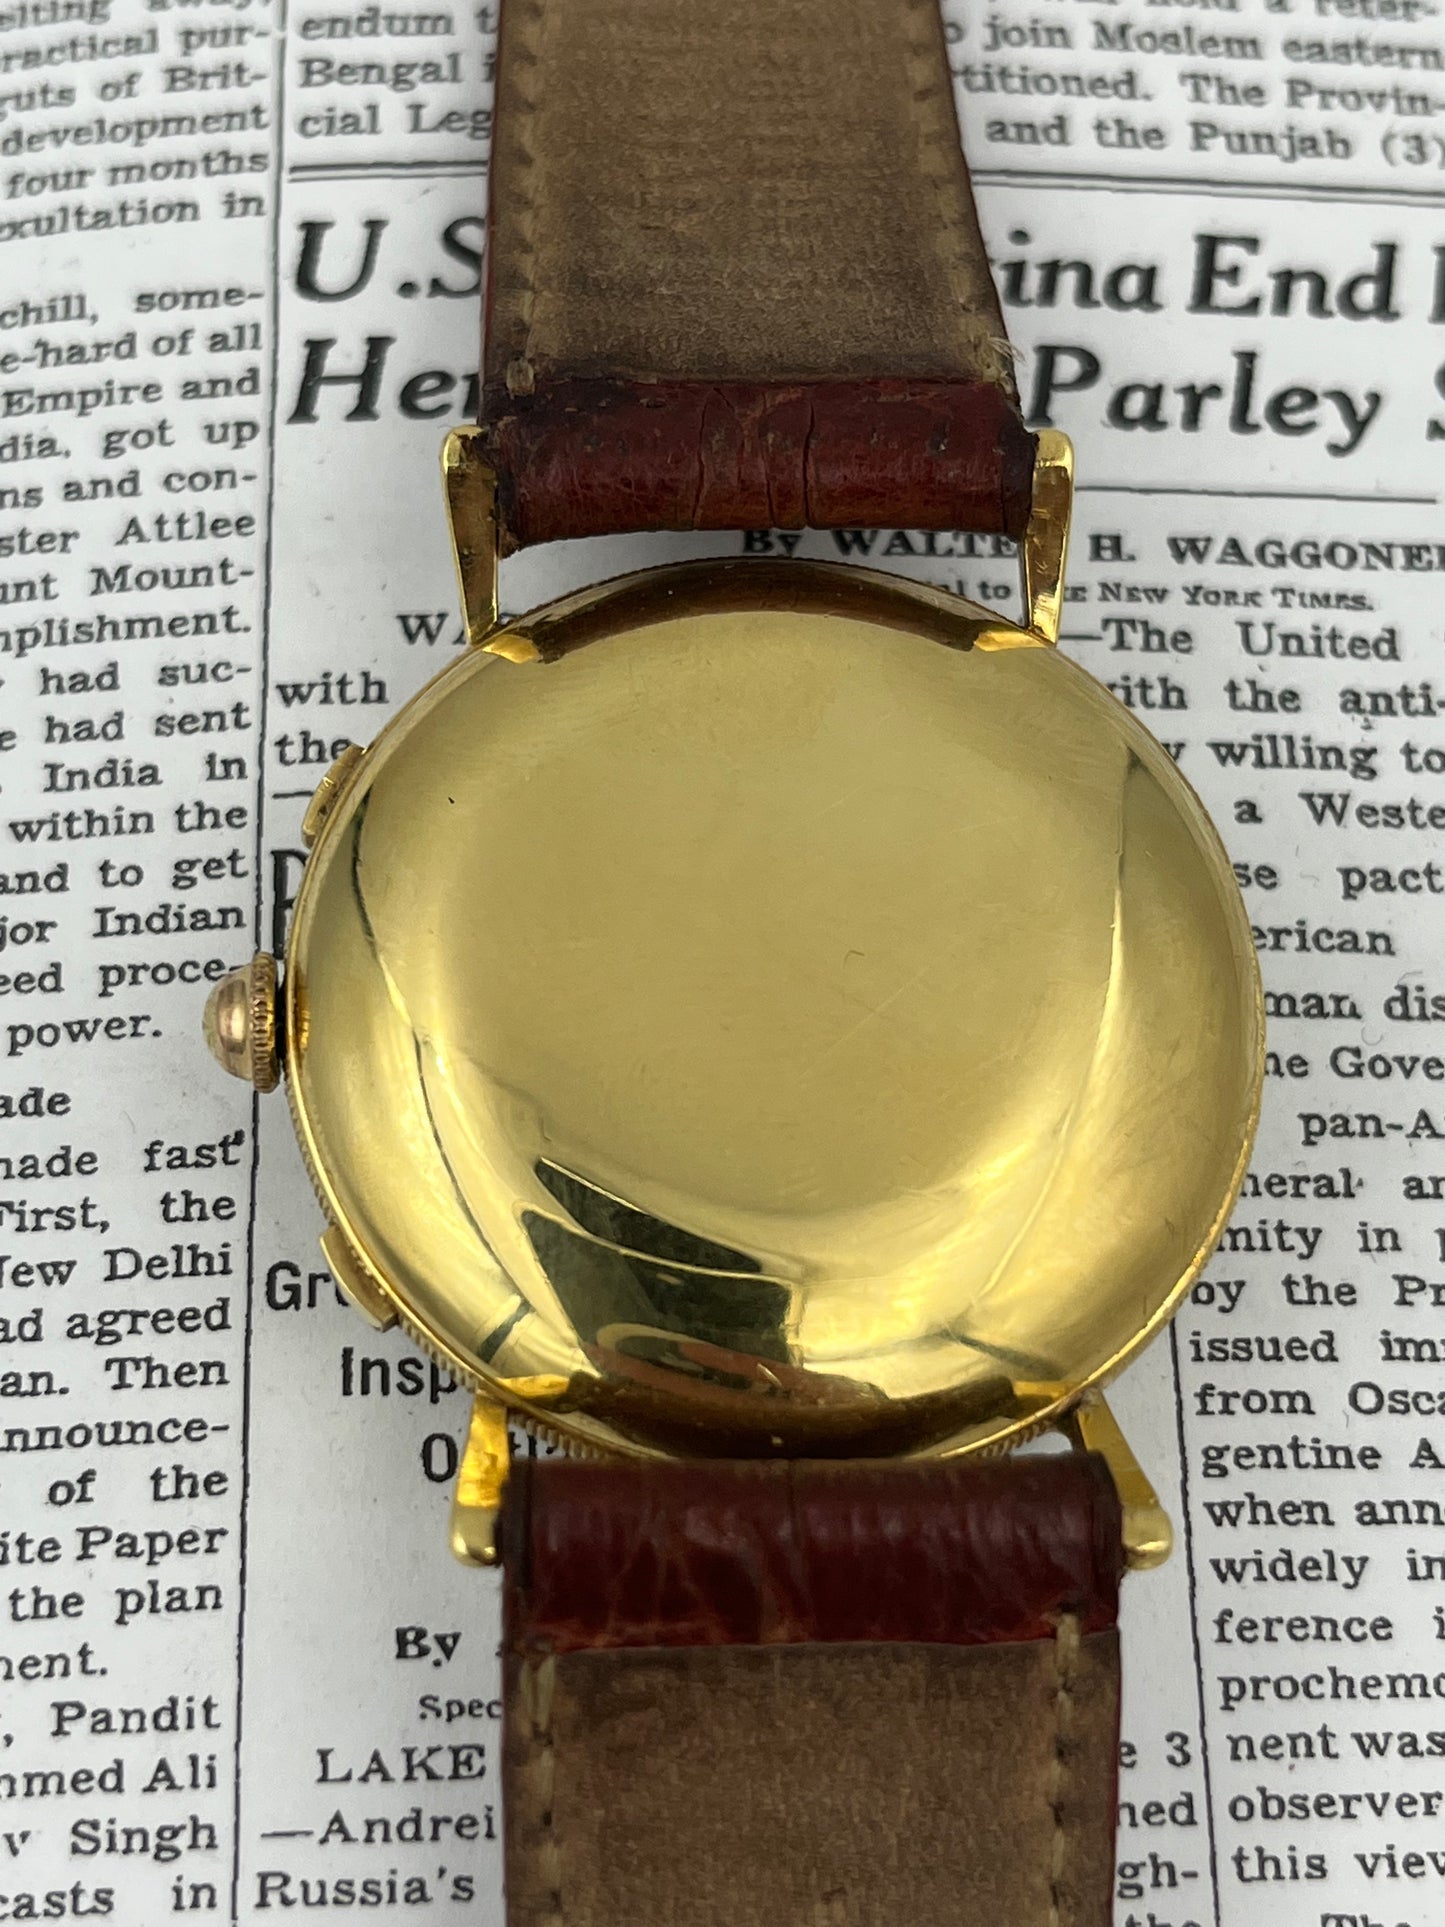 Rolex Vintage Chronograph